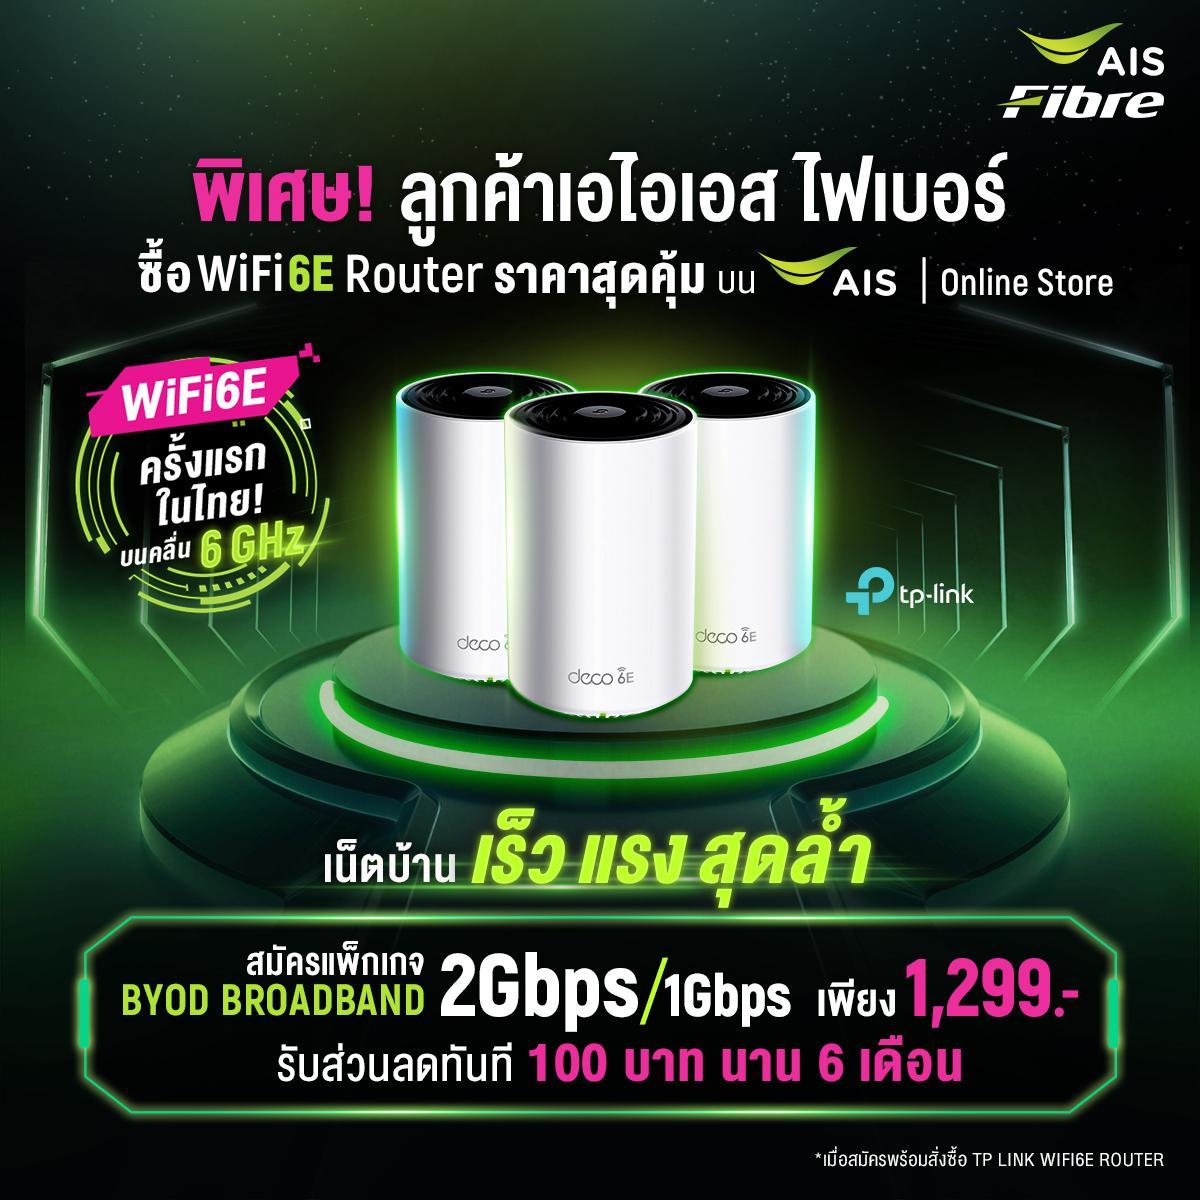 Ais Fibre เปิดประสบการณ์สุดล้ำ ครั้งแรกในไทย กับ Wifi6E  เทคโนโลยีอินเทอร์เน็ตบนคลื่นสัญญาณใหม่! 6 Ghz สัมผัสประสบการณ์เน็ตบ้าน เร็ว  แรง สุดล้ำก่อนใคร | Blognone